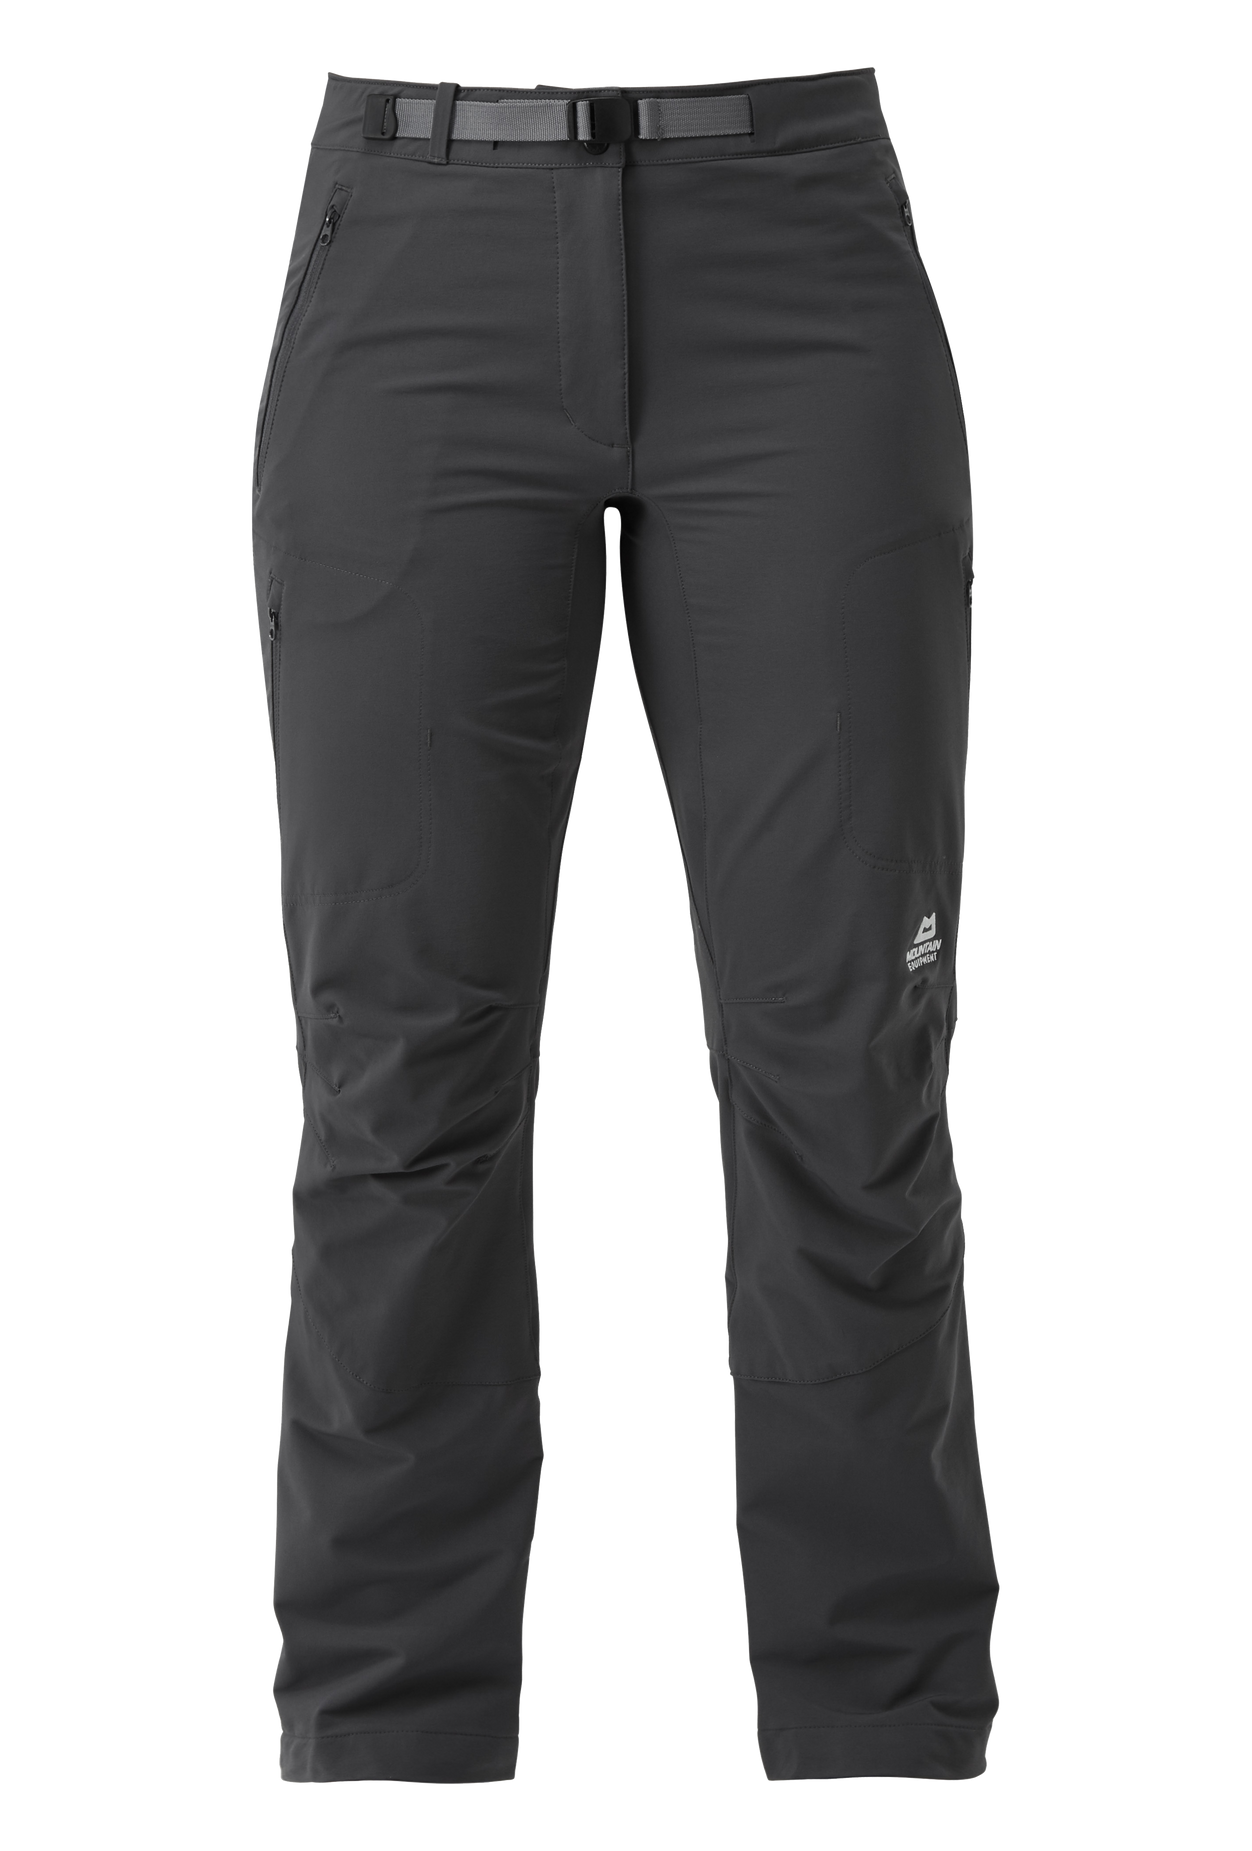 Mountain Equipment dámské softshellové kalhoty Chamois Wmns Pant Barva: Anvil Grey, Velikost: 16/XL